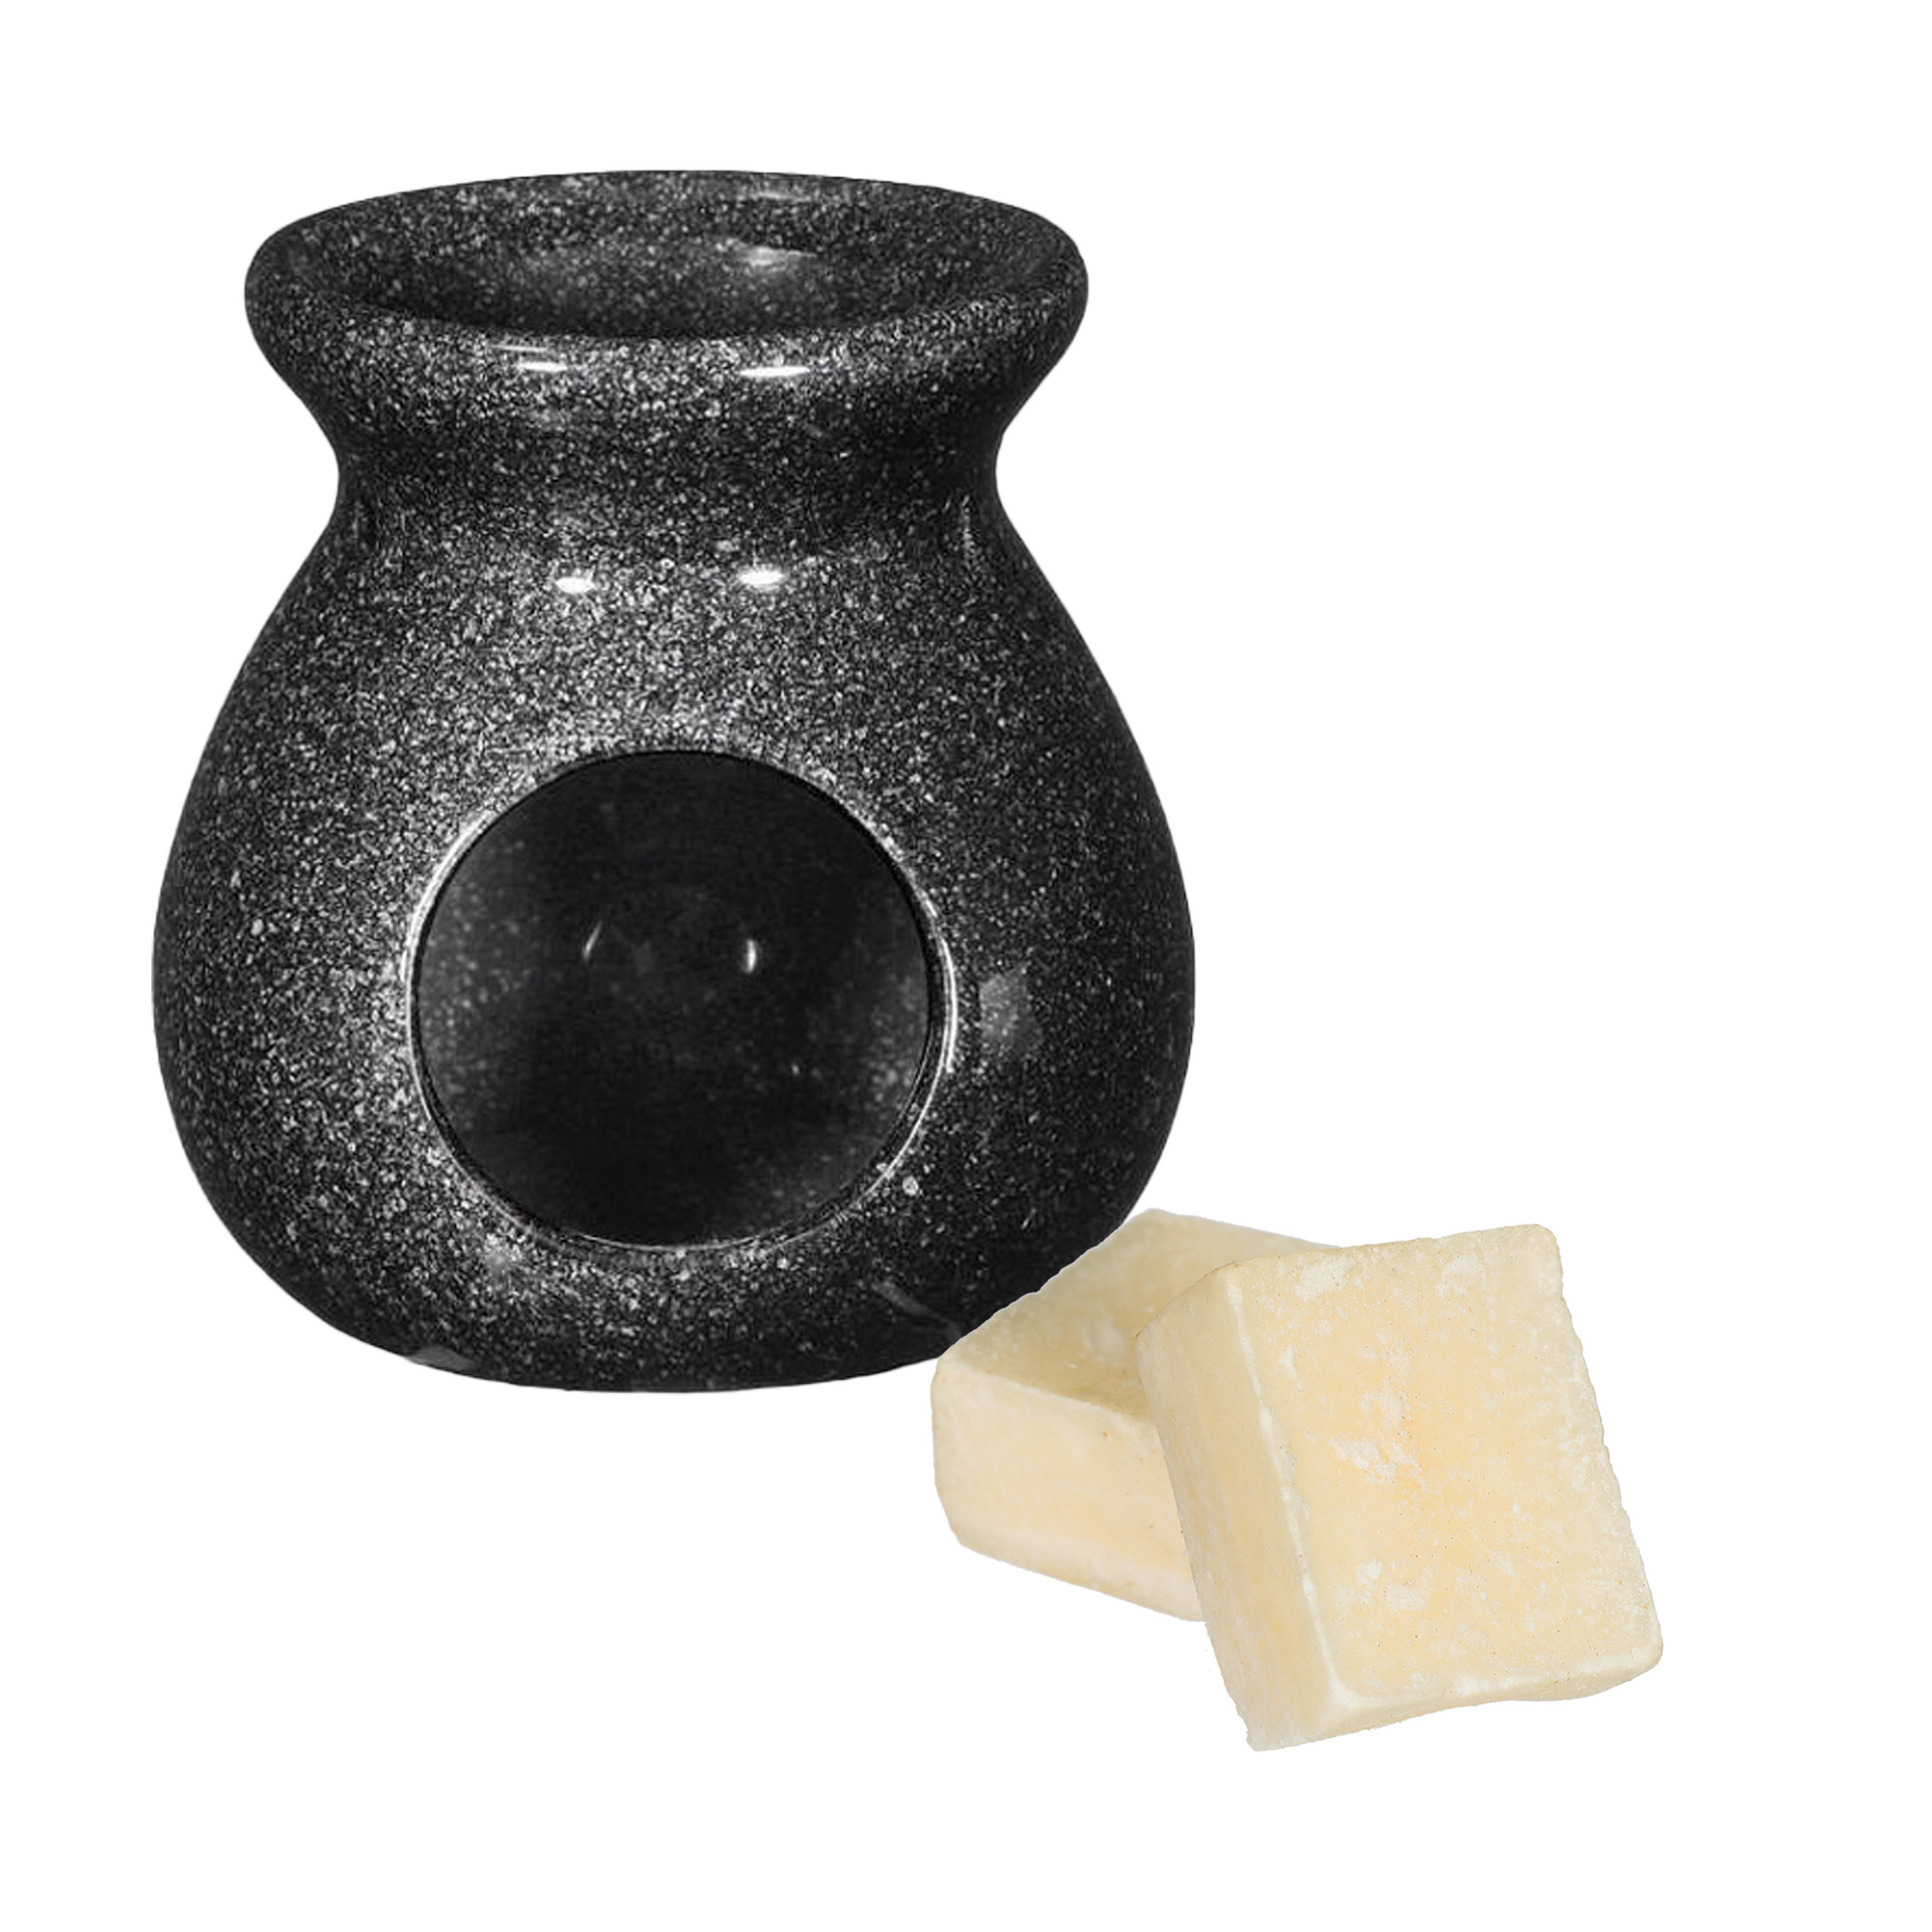 Amberblokjes-geurblokjes cadeauset cashmere geur inclusief geurbrander